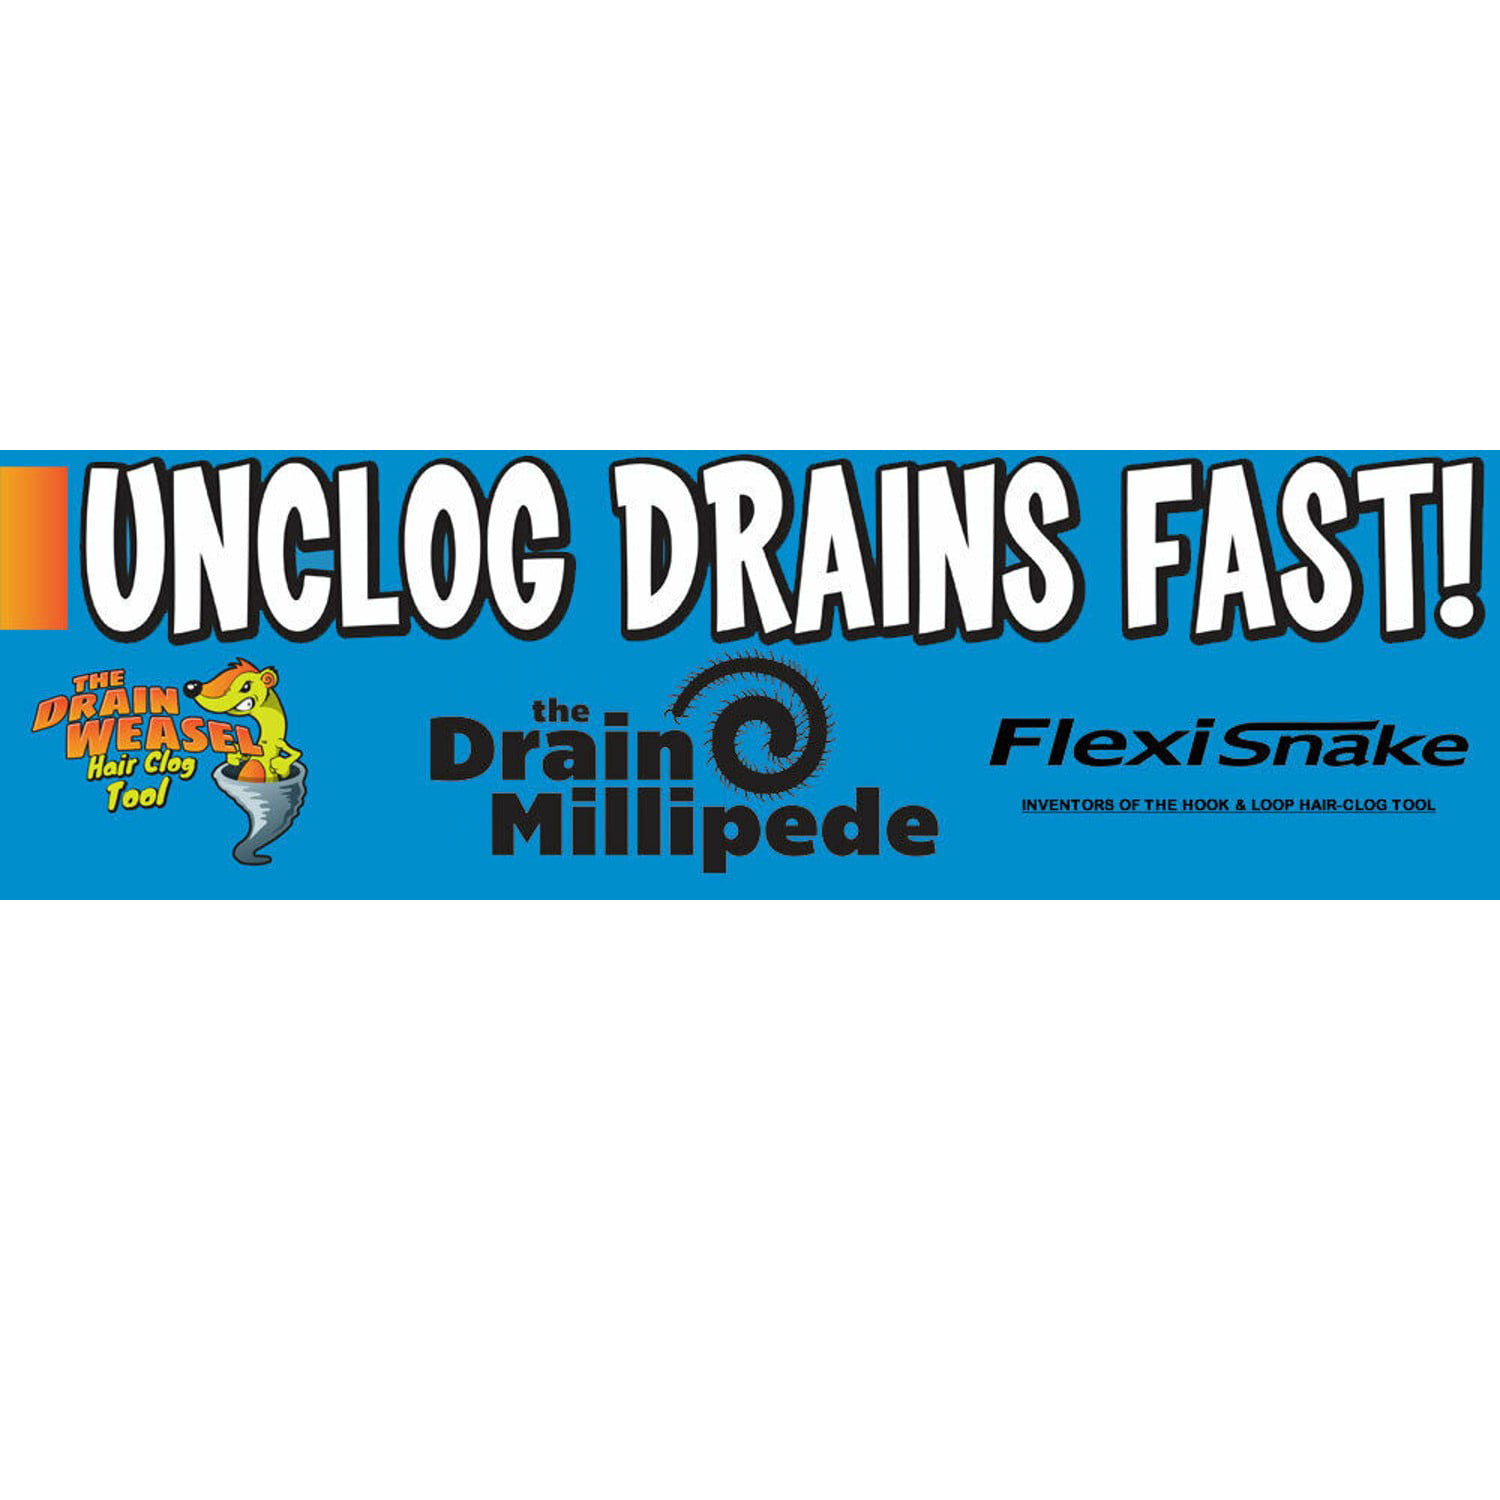 Grand Fusion FlexiSnake 18 Drain Weasel Sink Snake Cleaner 5pk